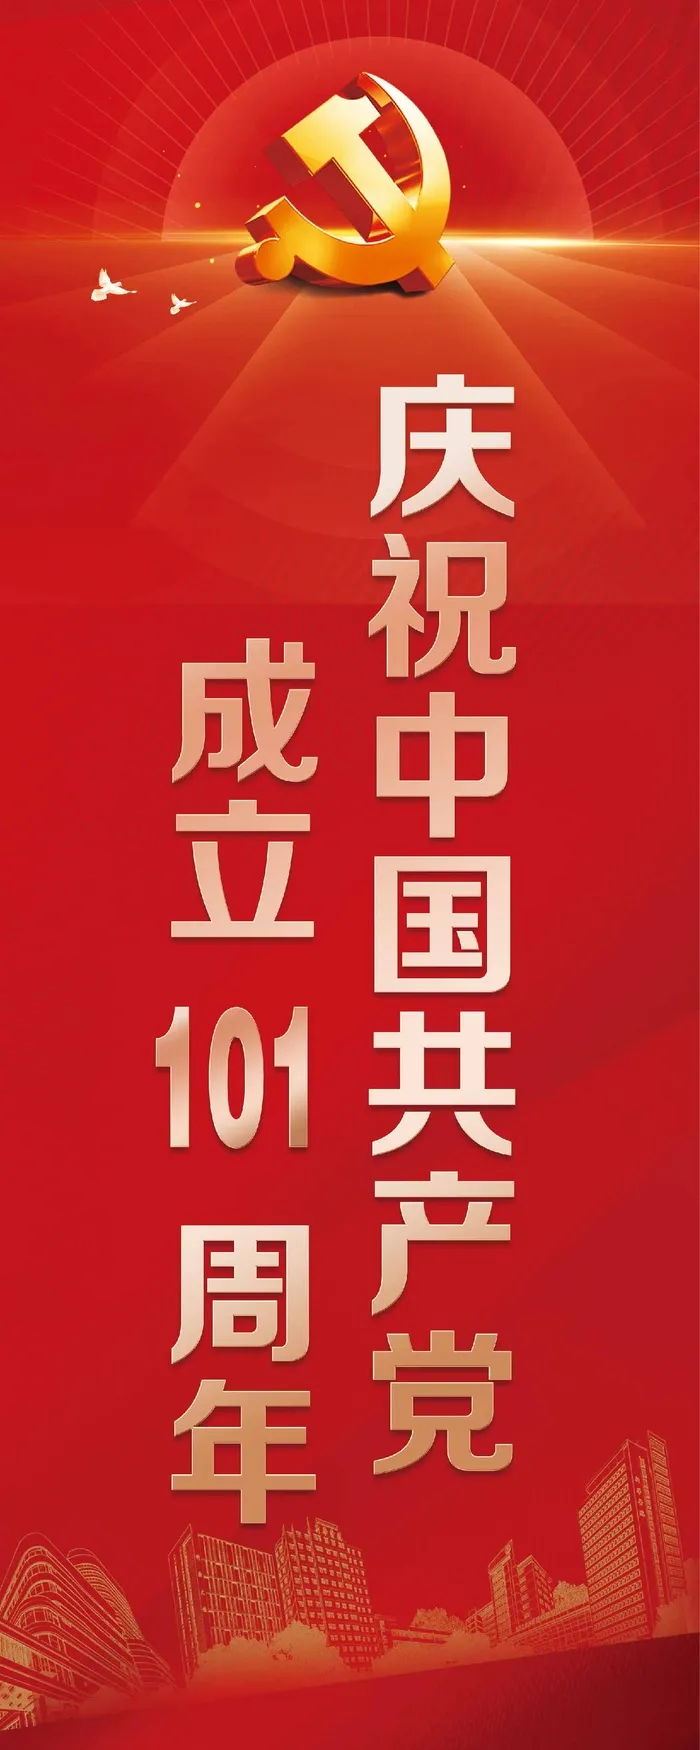 建党 101周年 道旗 海报 